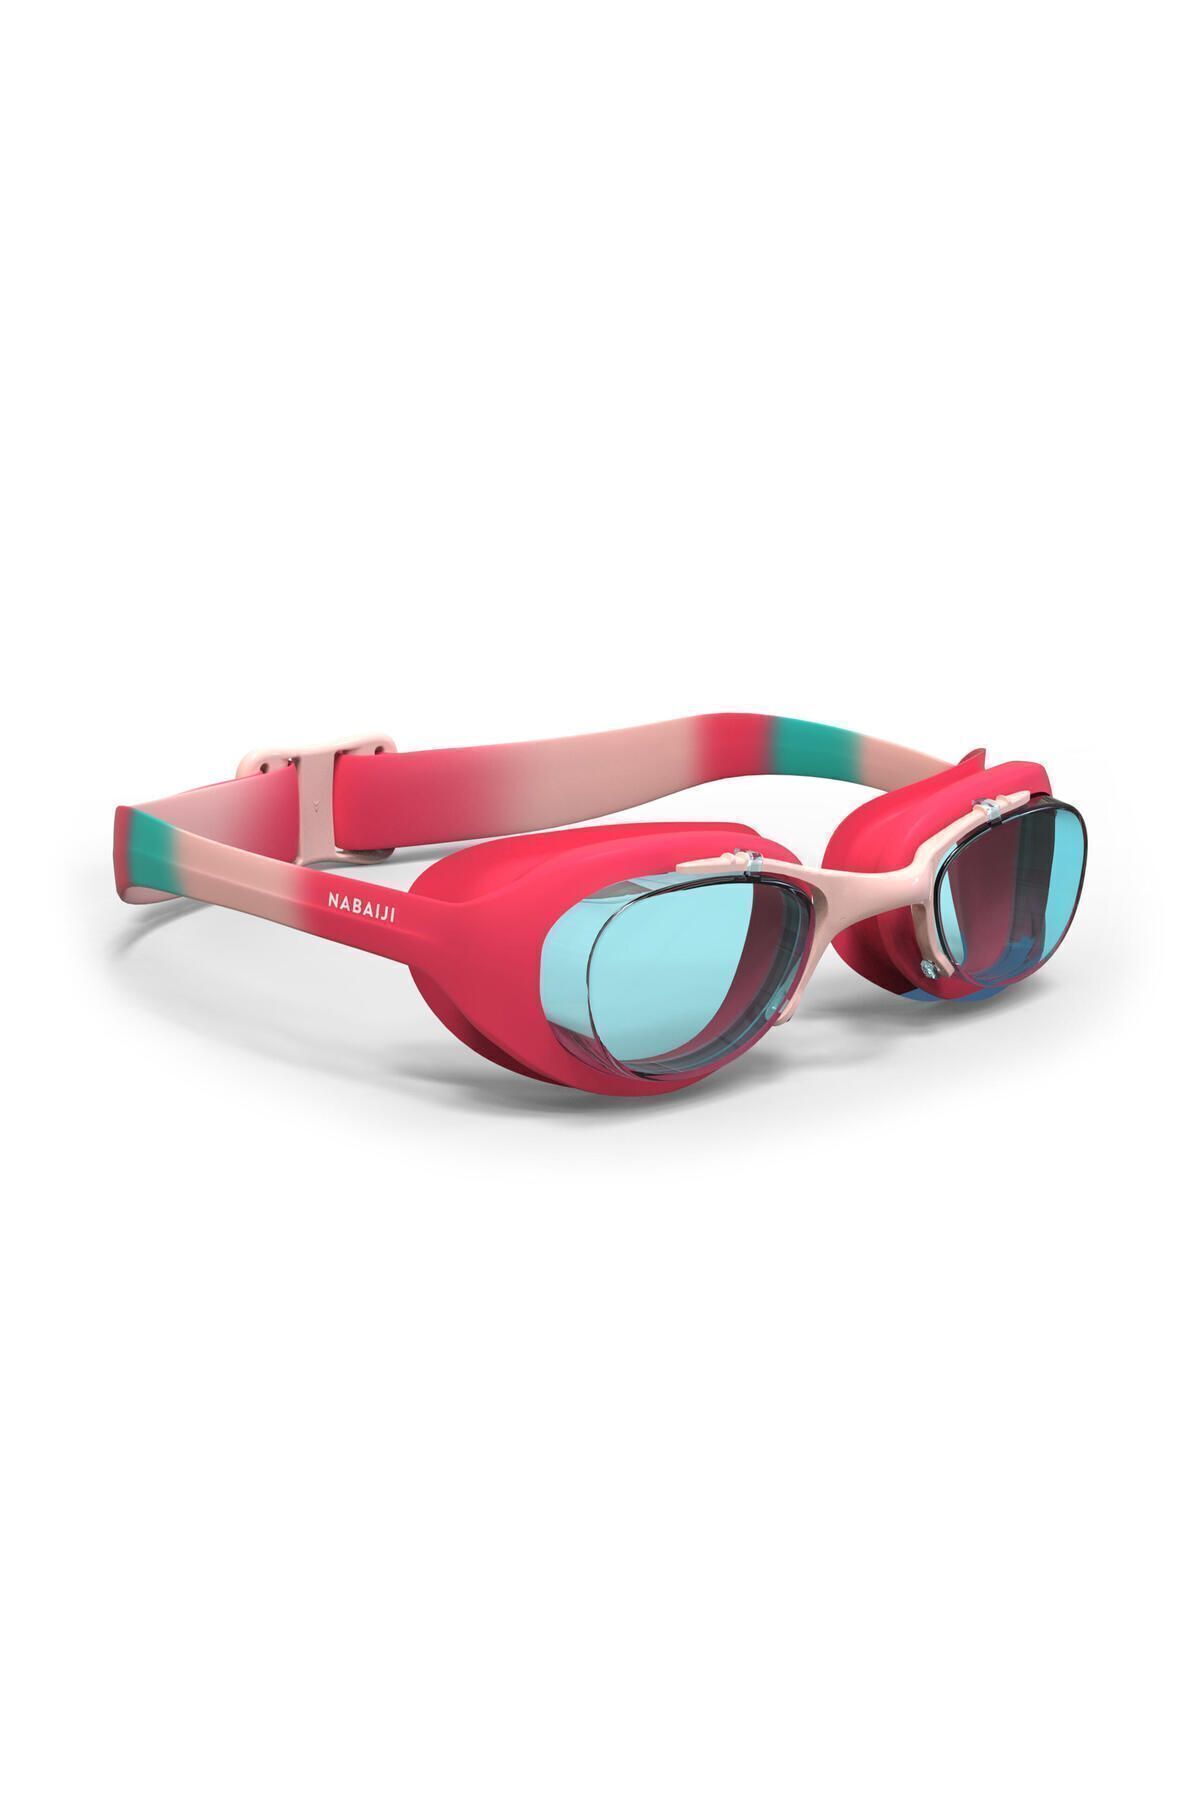 Decathlon Çocuk Yüzücü Gözlüğü - Pembe/mavi - Şeffaf Camlar - Xbase